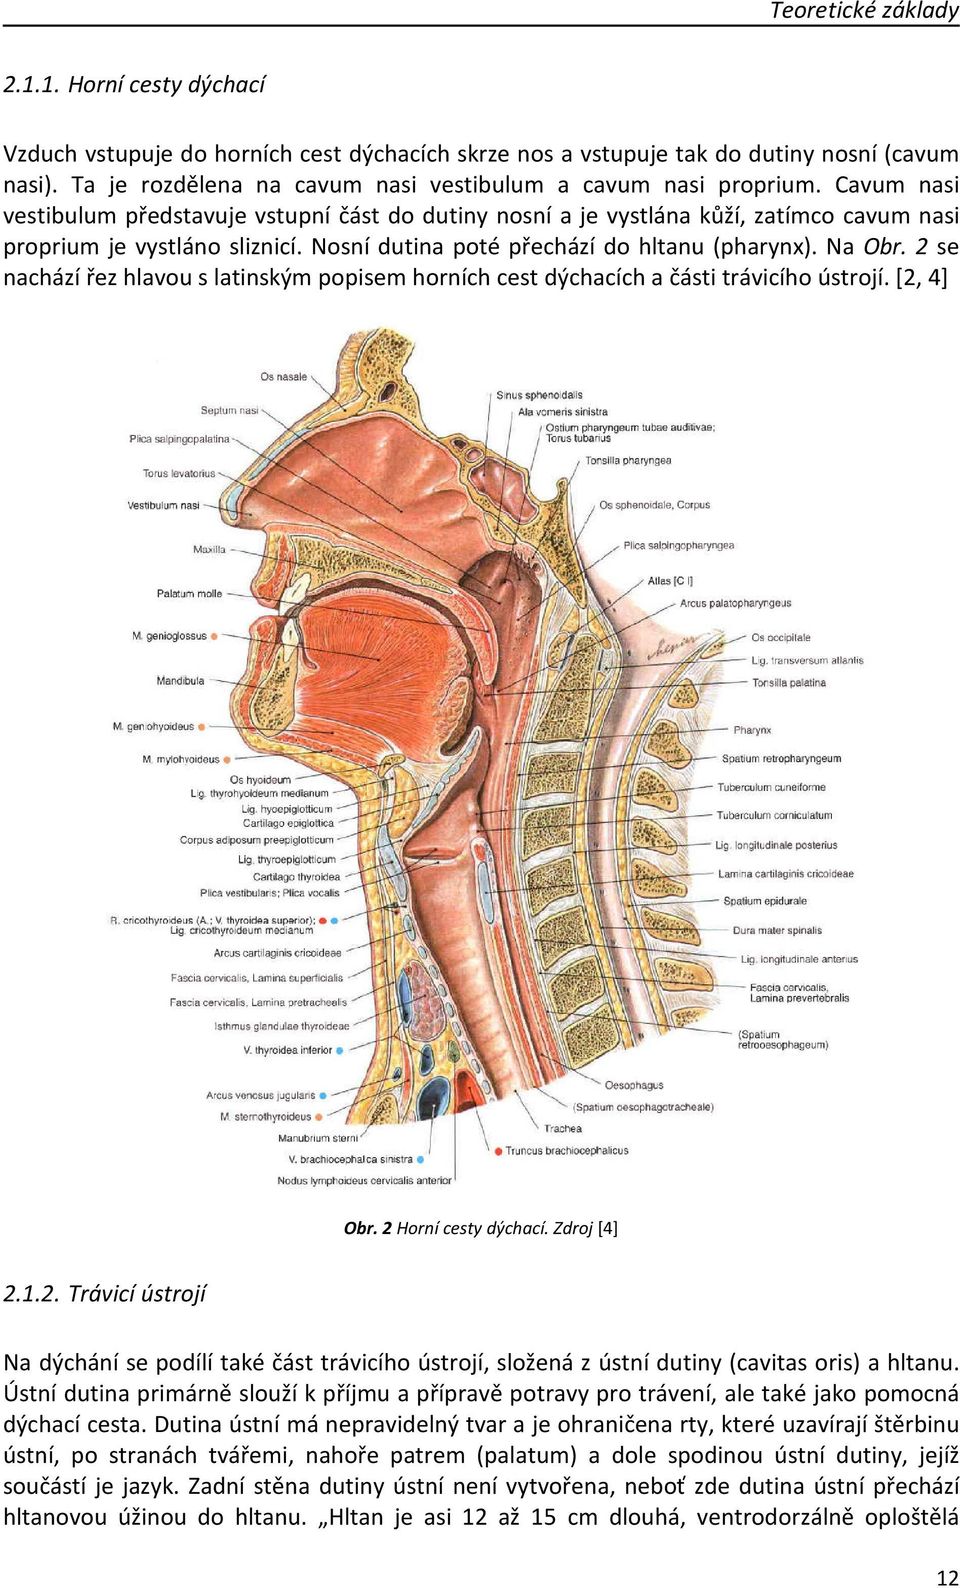 Nosní dutina poté přechází do hltanu (pharynx). Na Obr. 2 se nachází řez hlavou s latinským popisem horních cest dýchacích a části trávicího ústrojí. [2, 4] Obr. 2 Horní cesty dýchací. Zdroj [4] 2.1.